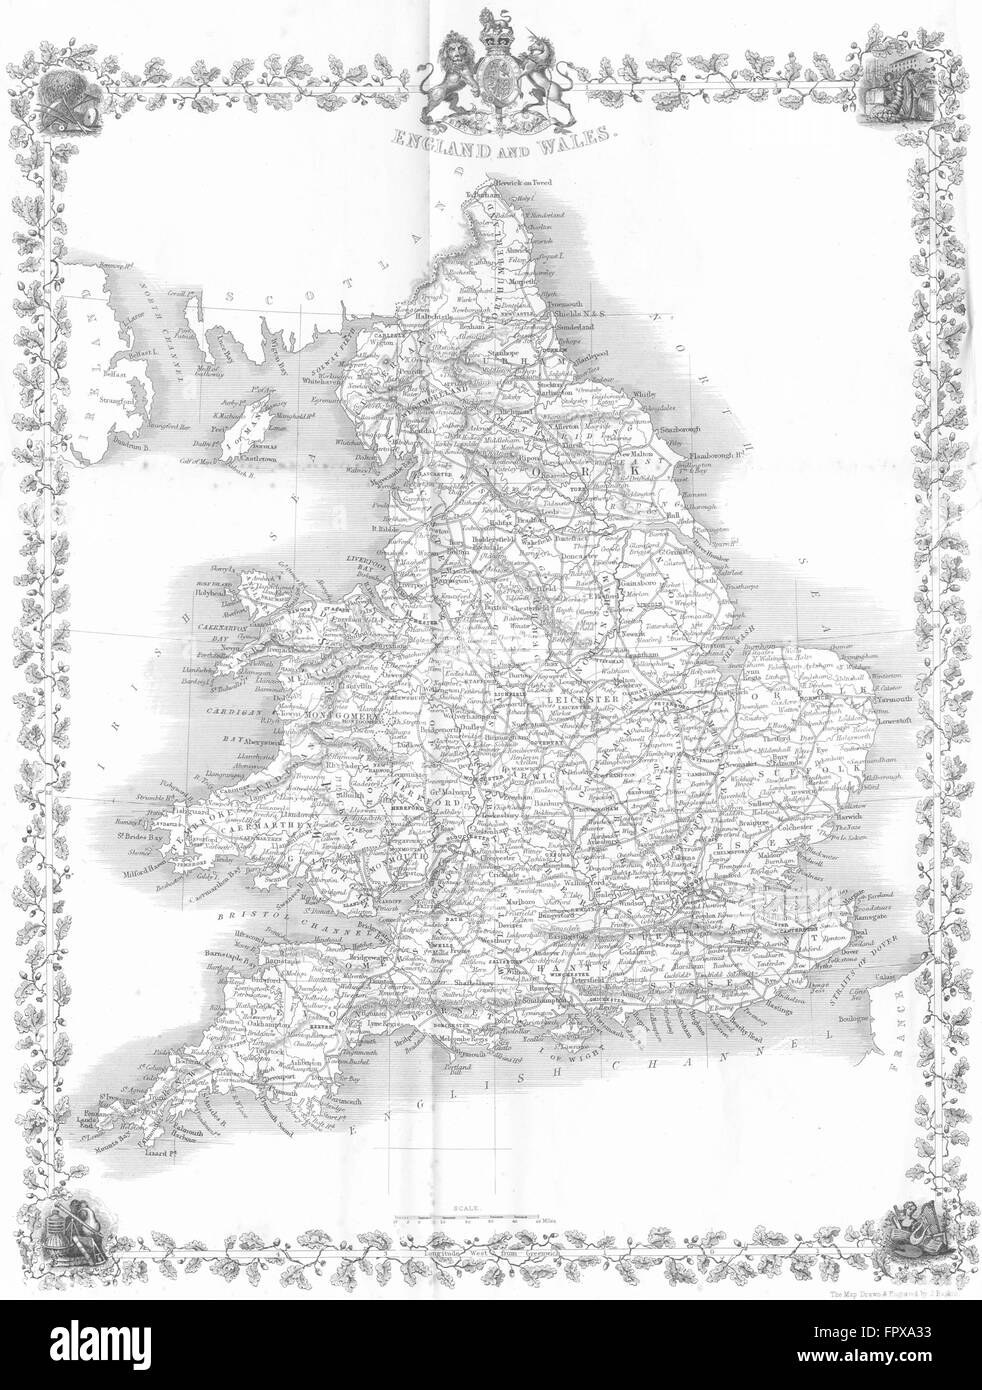 UK: England Wales: Rapkin, 1860 antique map Stock Photo